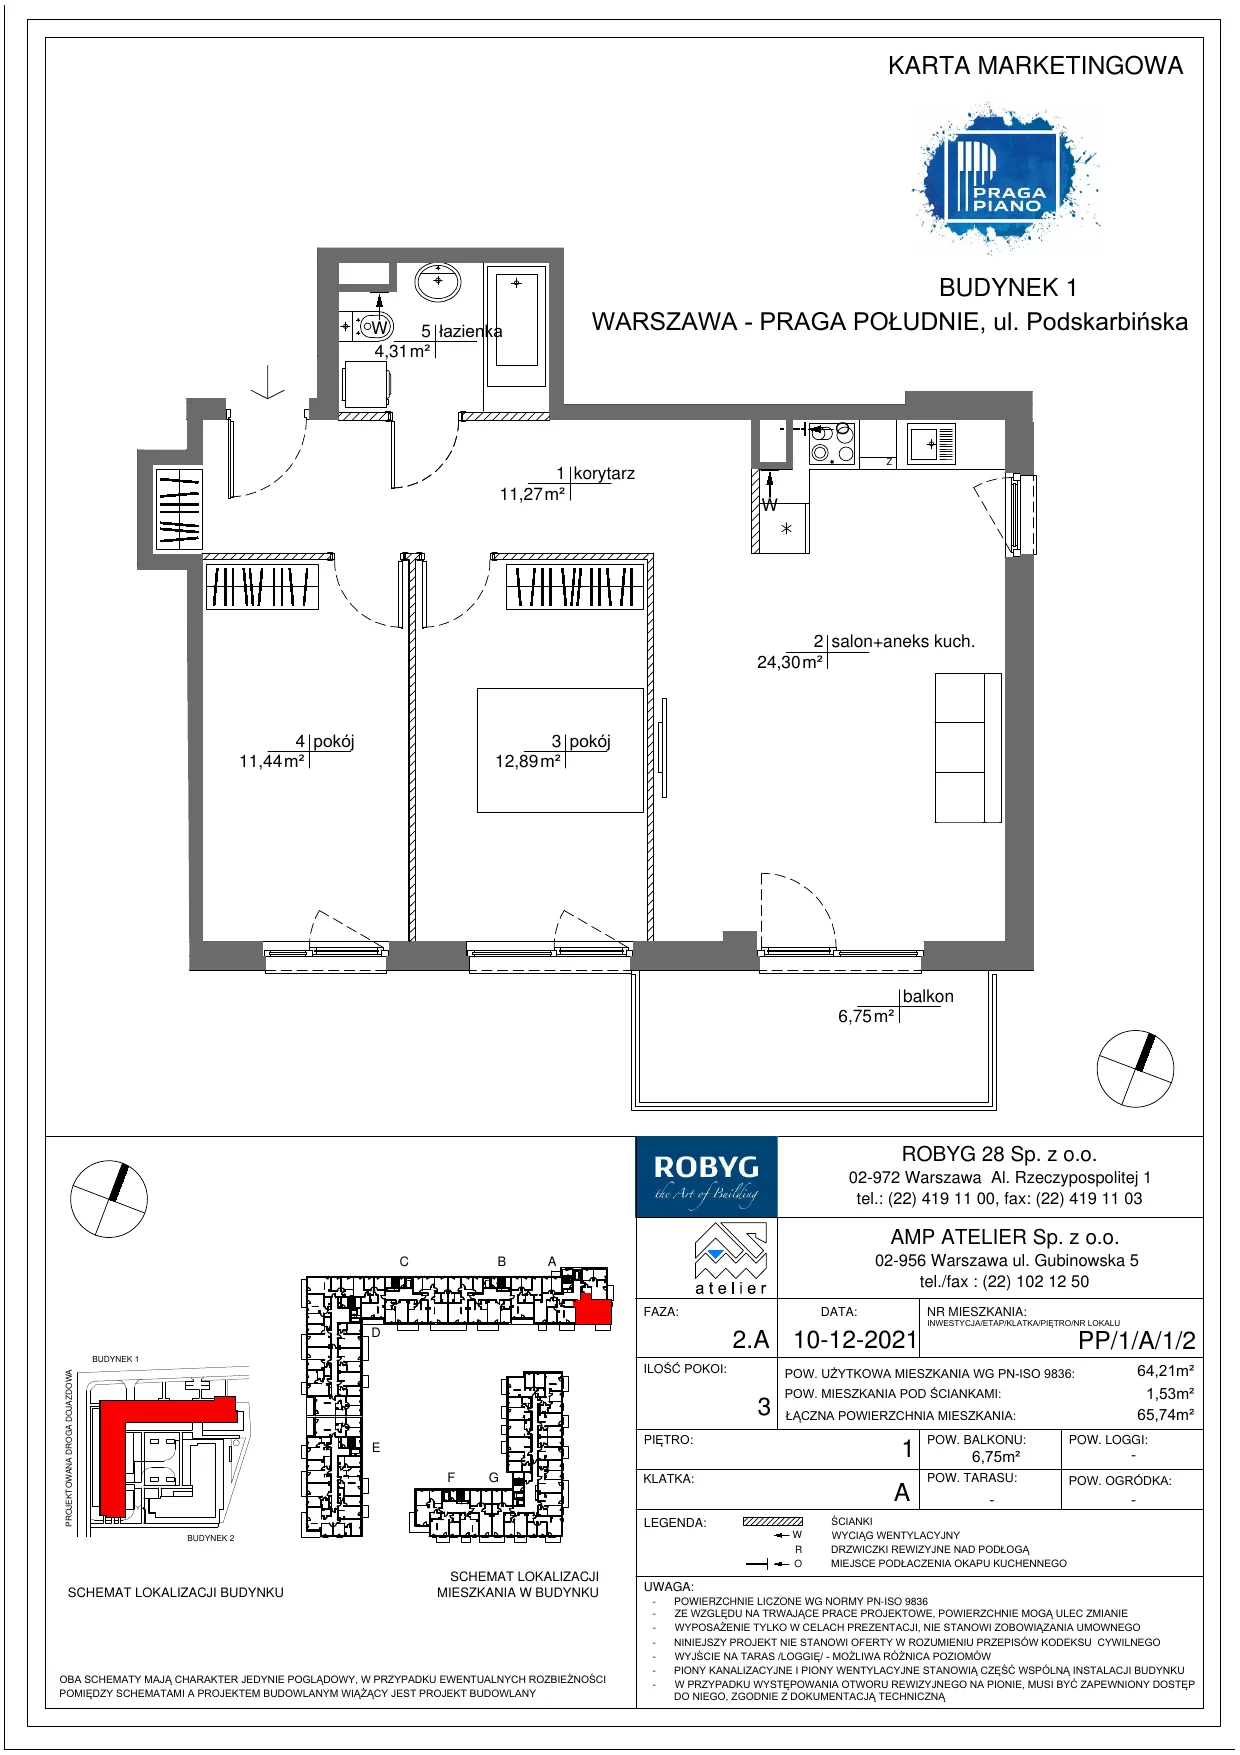 Mieszkanie 64,21 m², piętro 1, oferta nr PP/1/A/1/2, Praga Piano, Warszawa, Praga Południe, Kamionek, ul. Podskarbińska